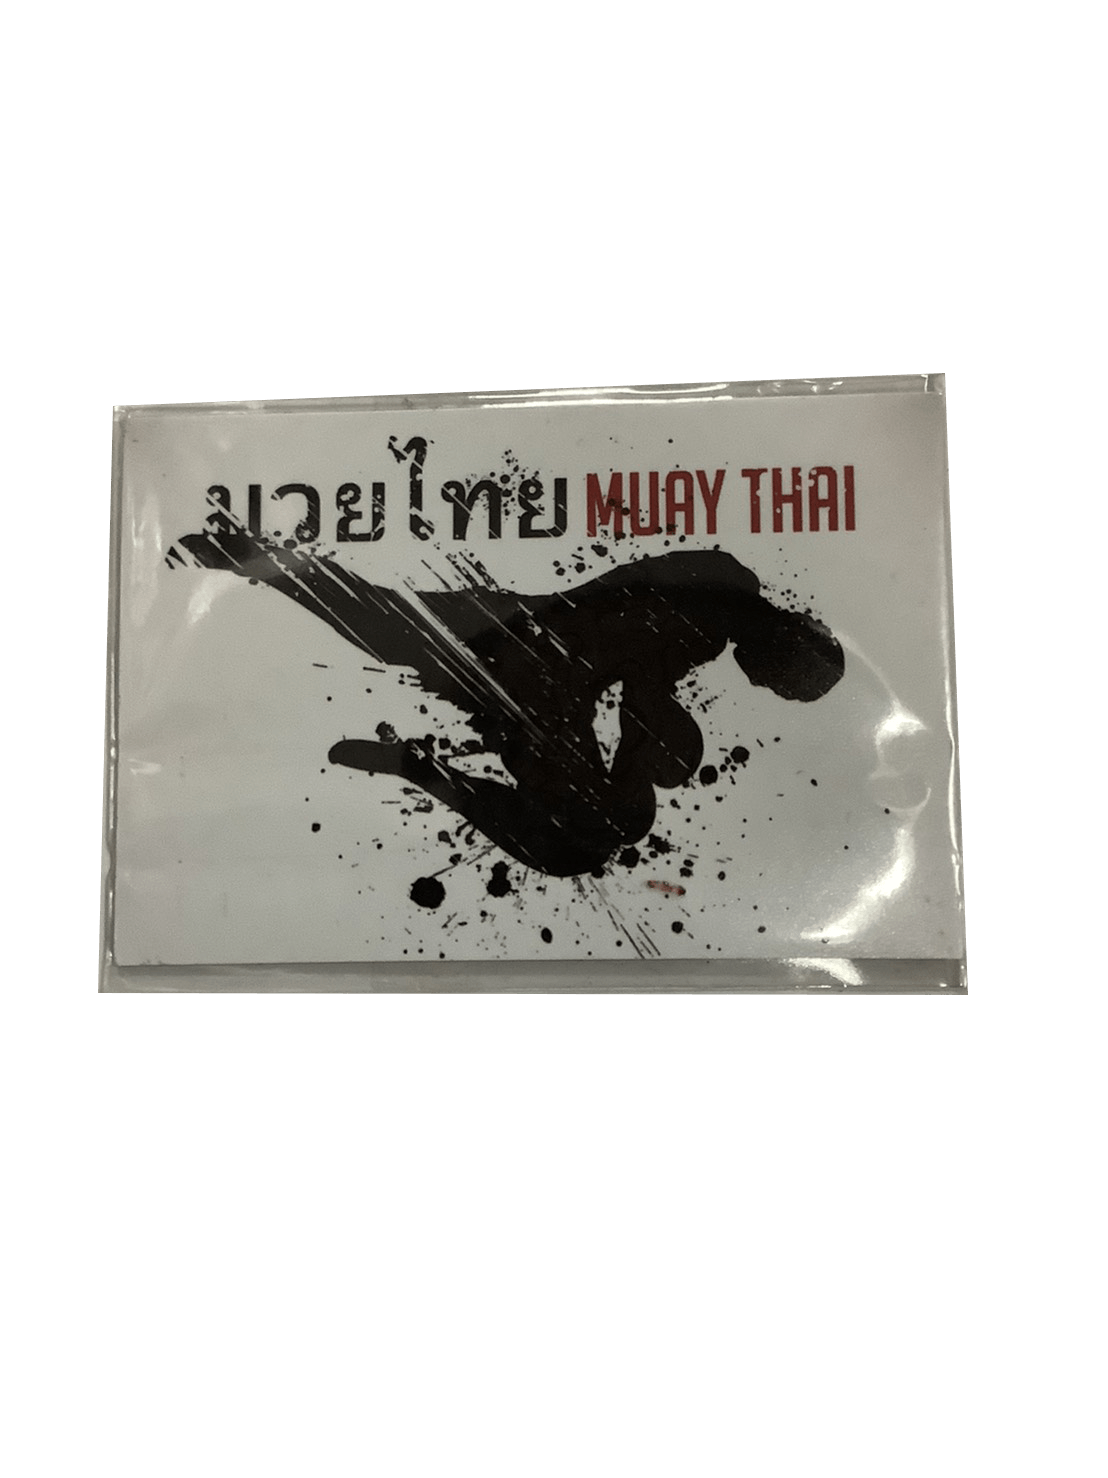 Magnet Sticker for fridge Muay Thai Knee